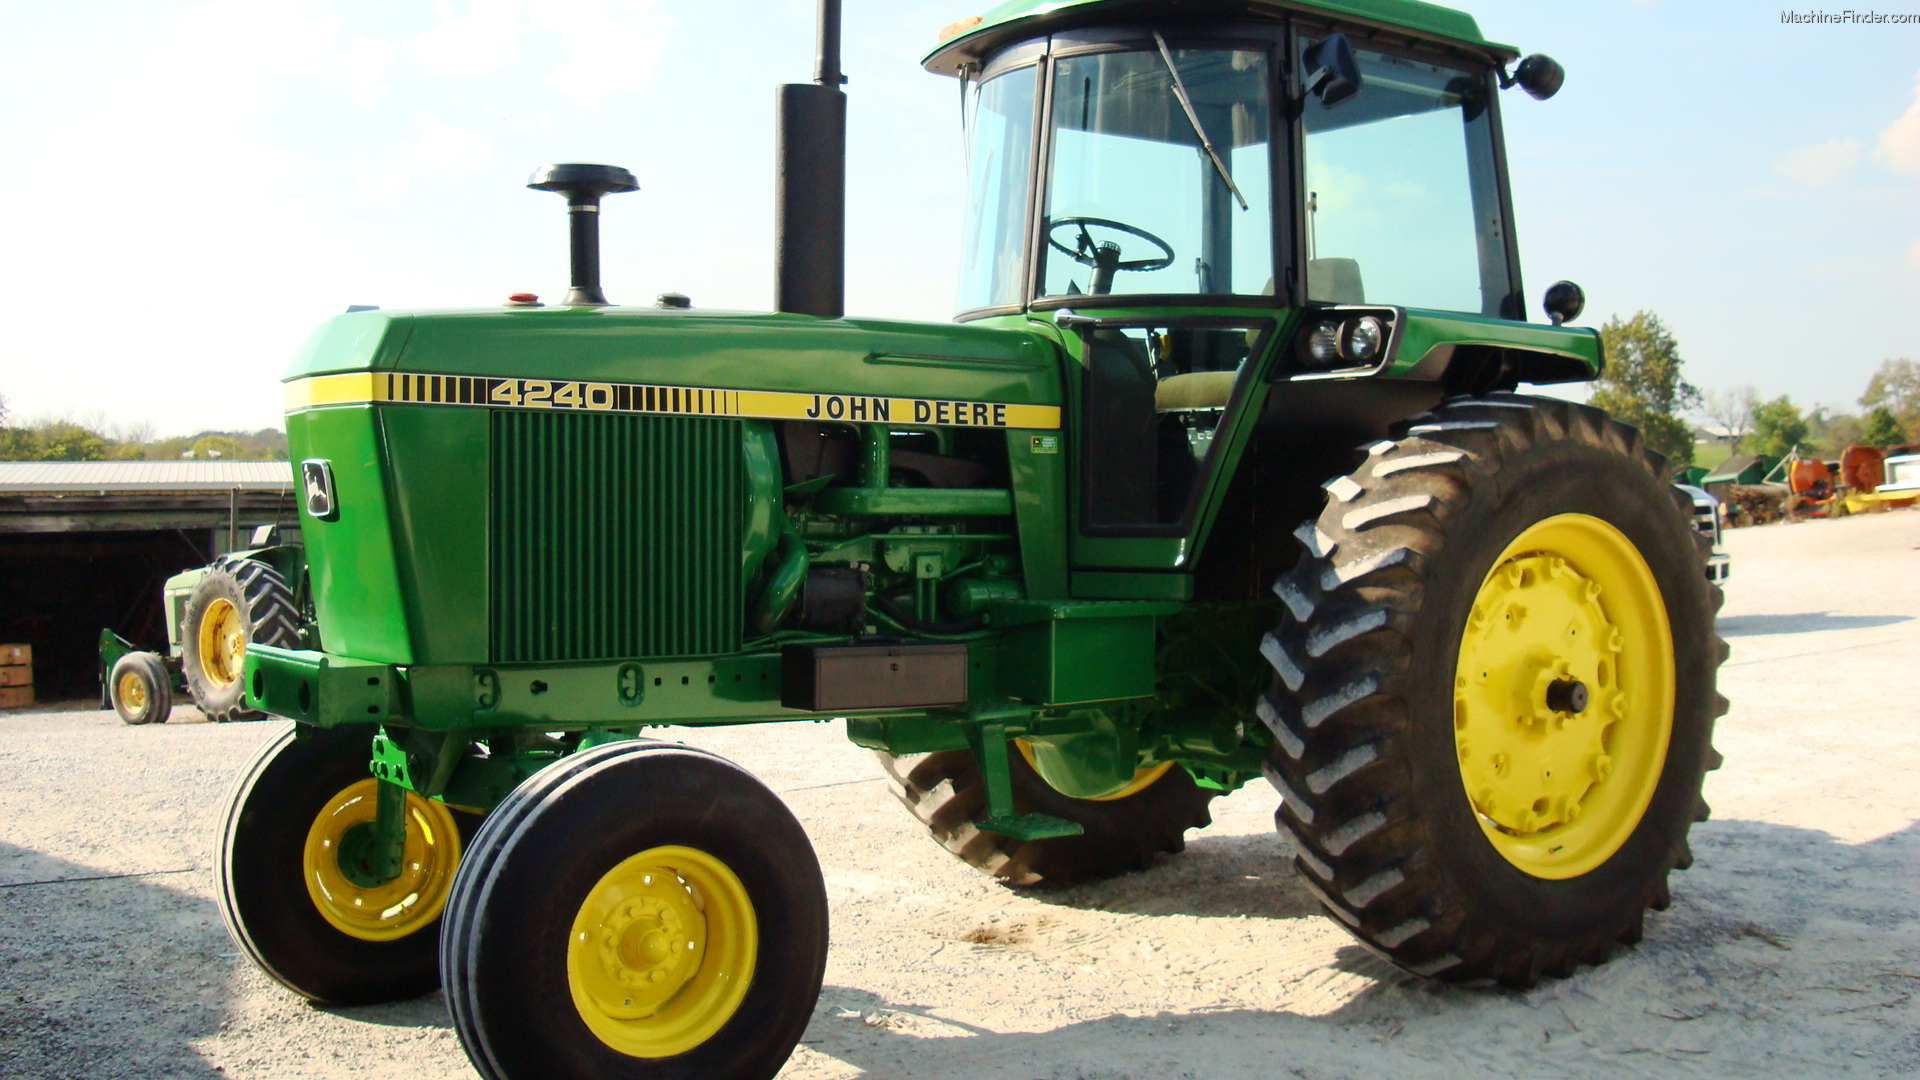 1978 John Deere 4240 Tractors - Row Crop (+100hp) - John Deere ...